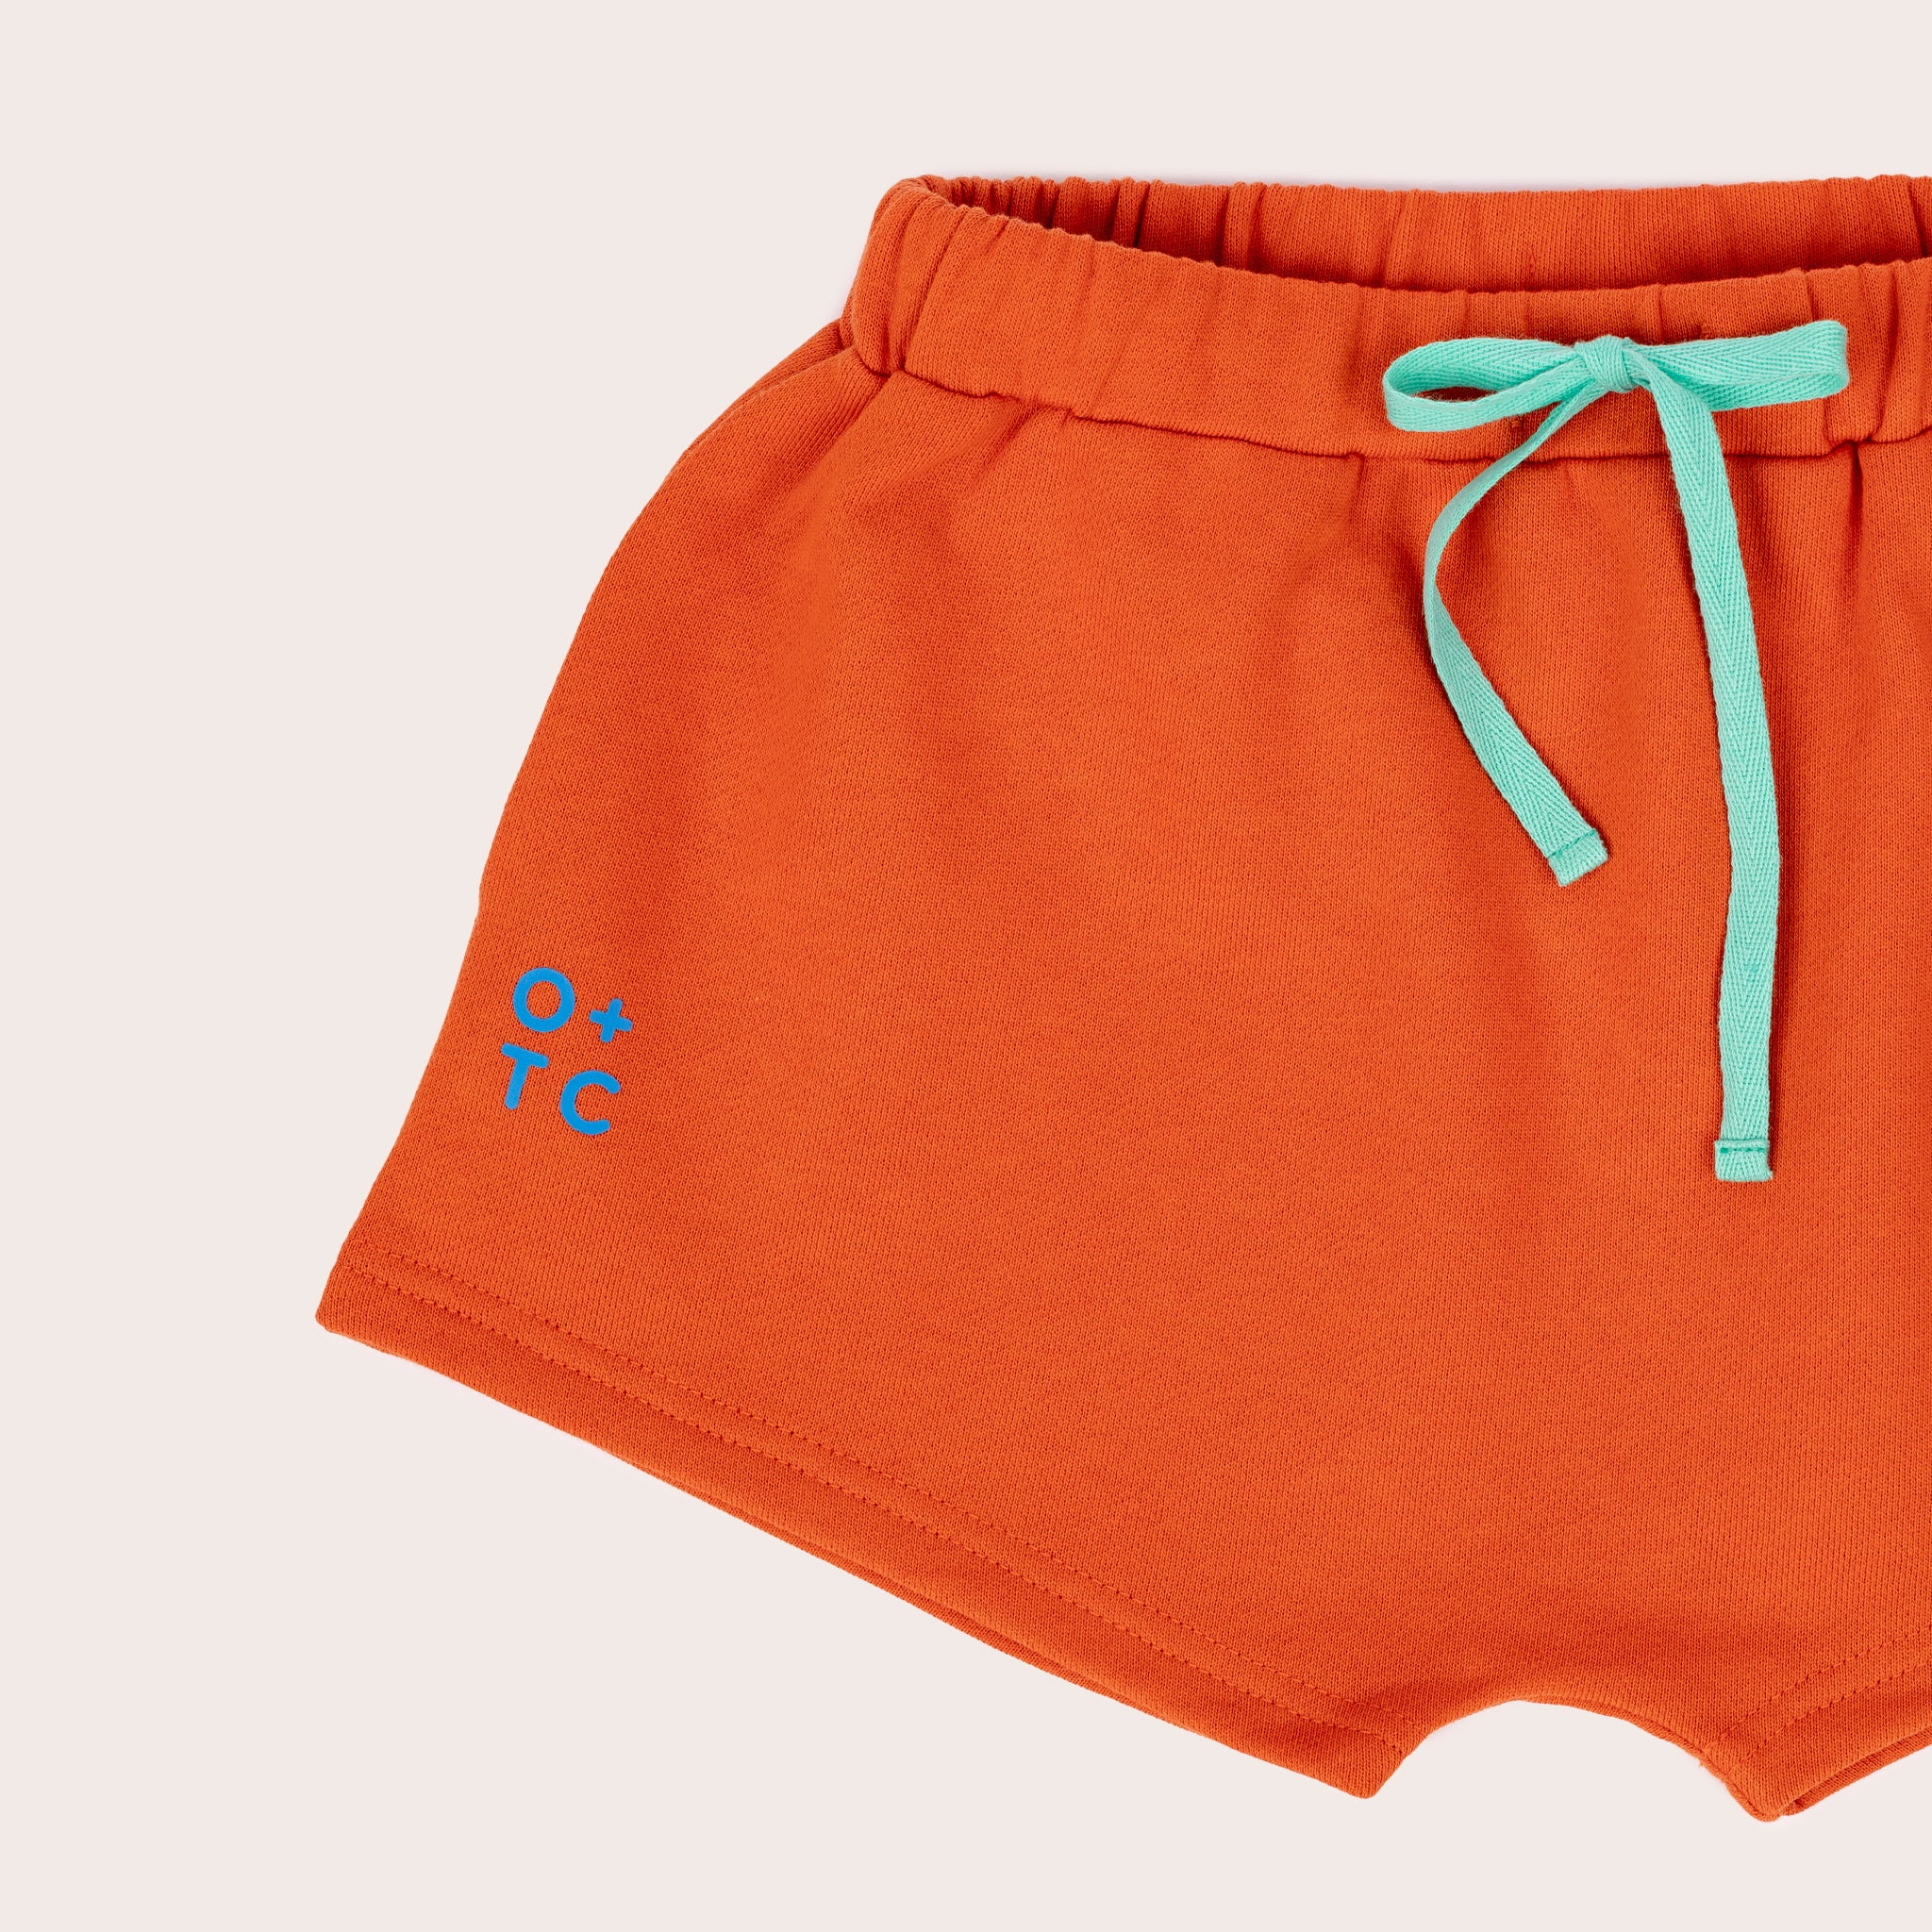 Sherbet Girls Shorts - Orange